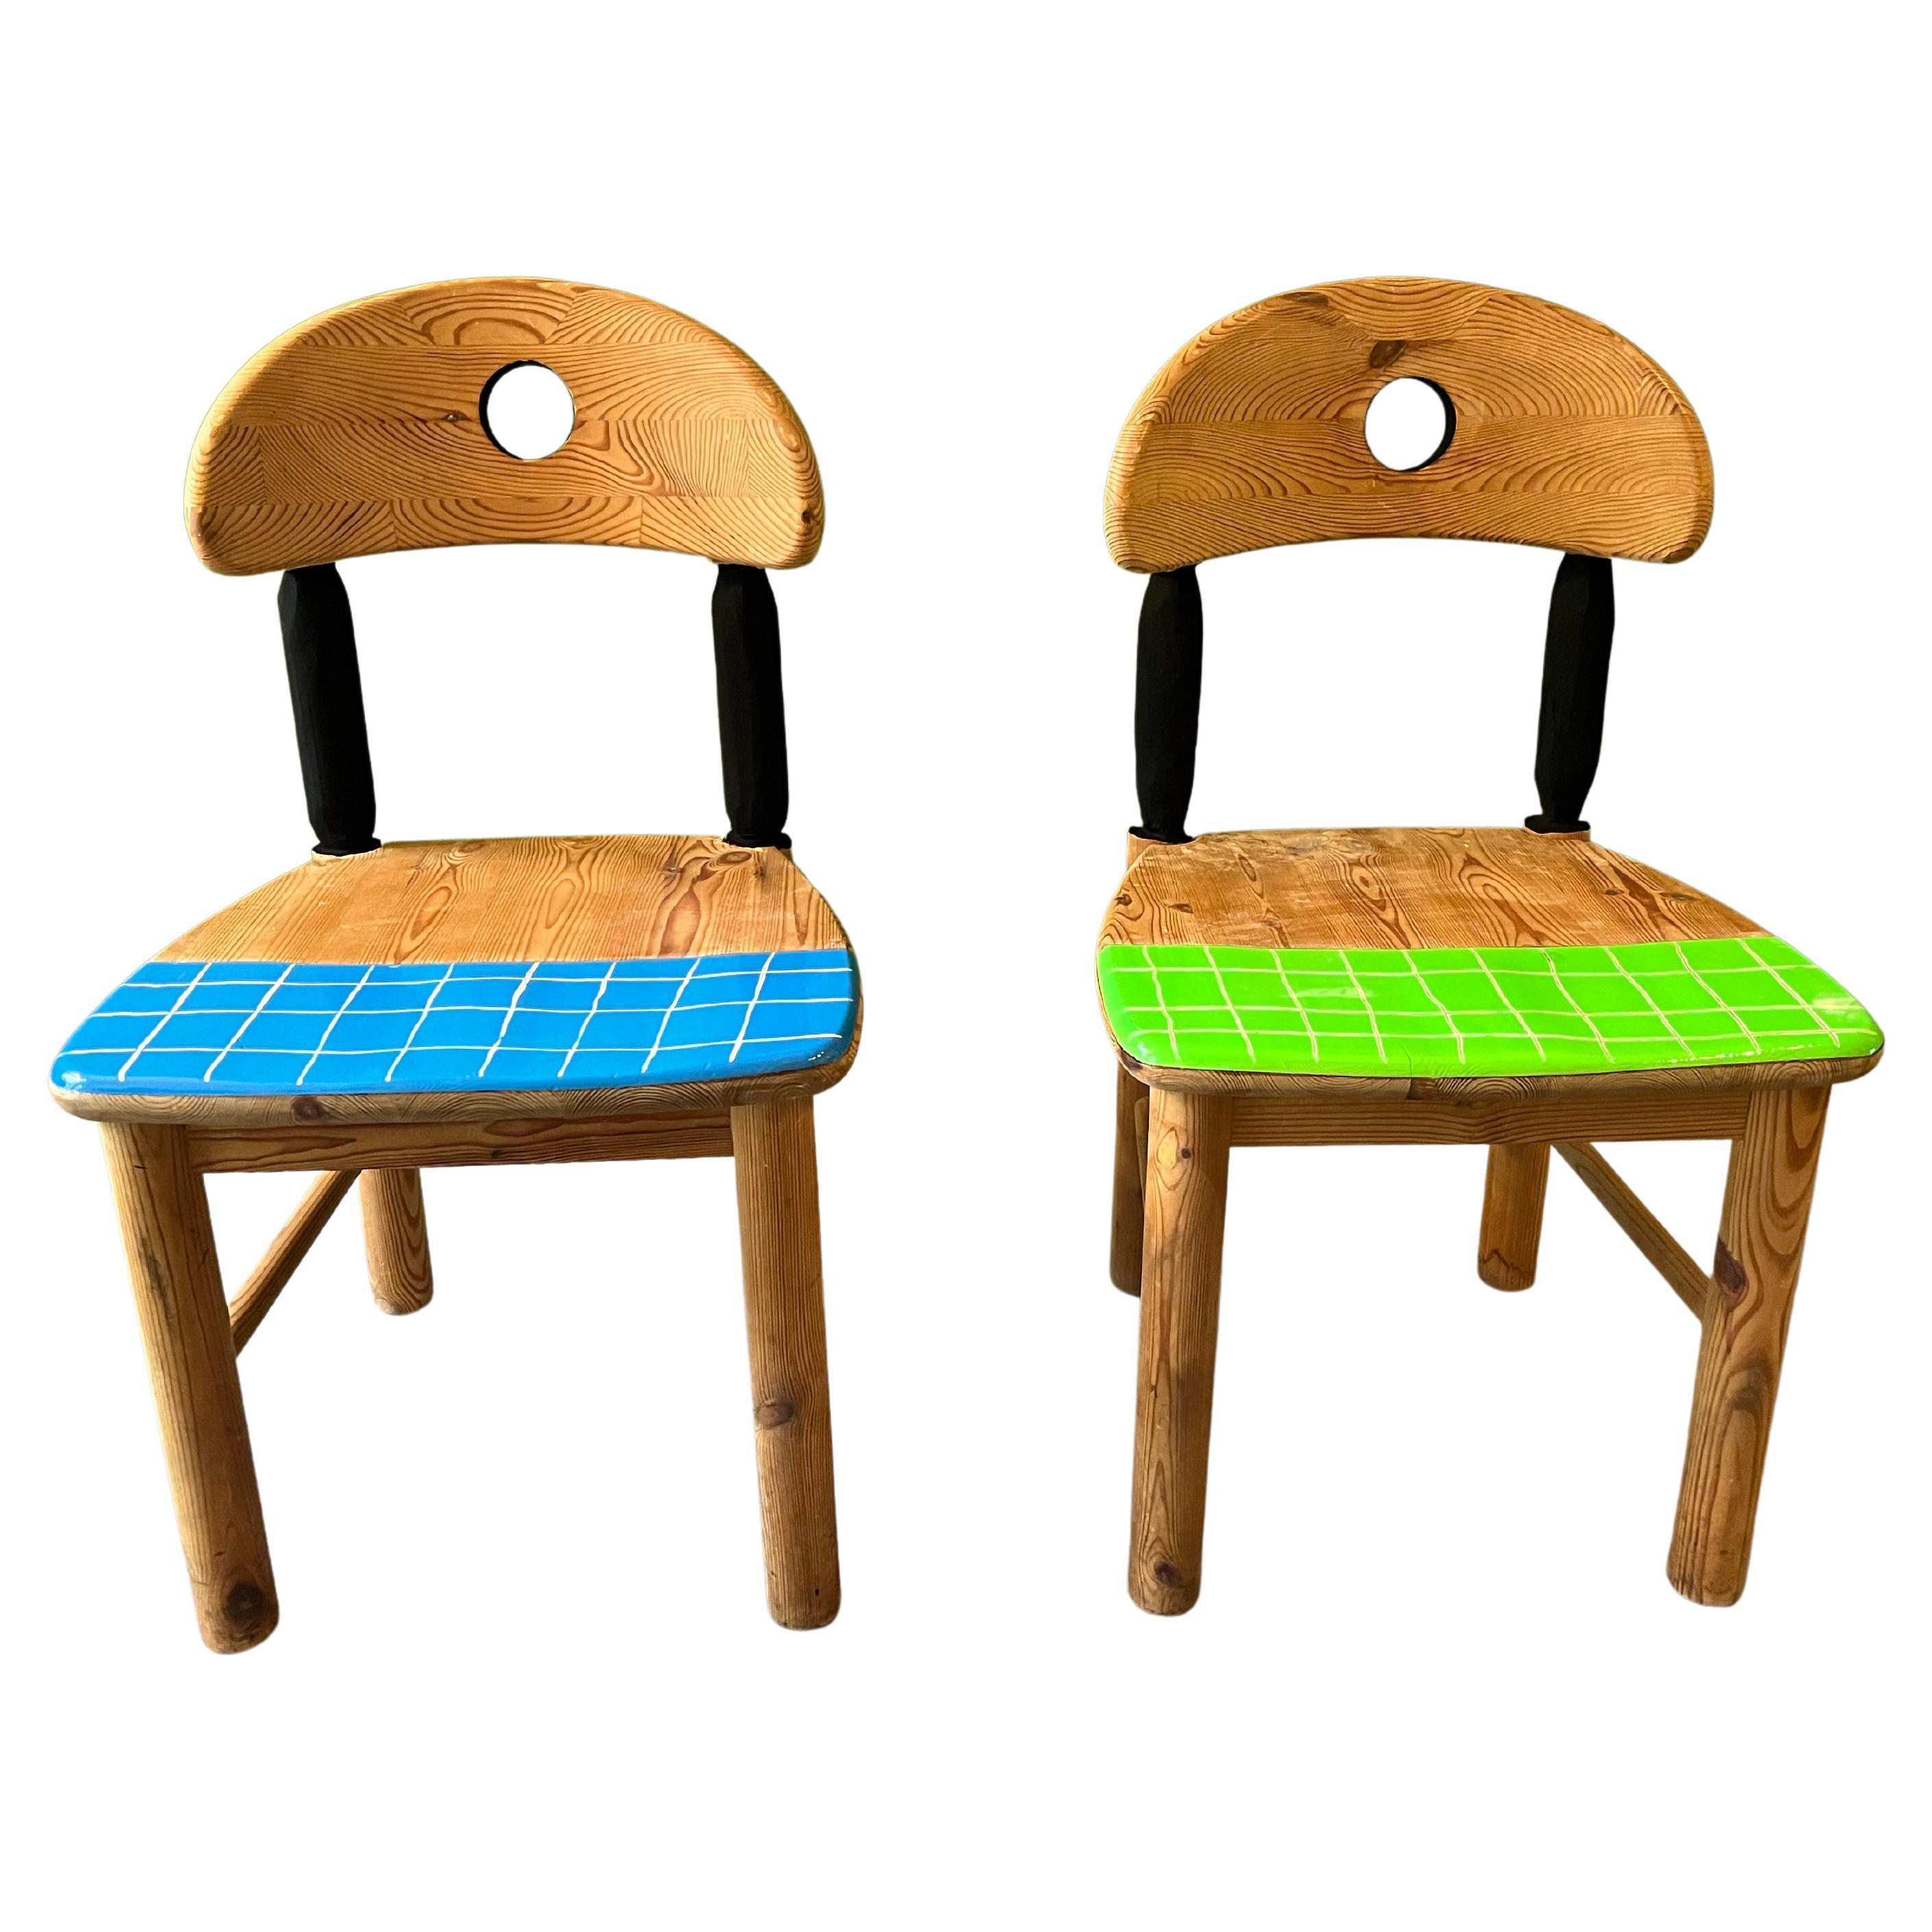 Dansk classics, Daumiller/ fait à la main, découpé, peint et laqué à plusieurs reprises. Ces chaises ont été contemporaines par l'artiste fonctionnel Staab, elles sont uniques en leur genre.
Par mon travail, je transforme chaque chaise en un objet